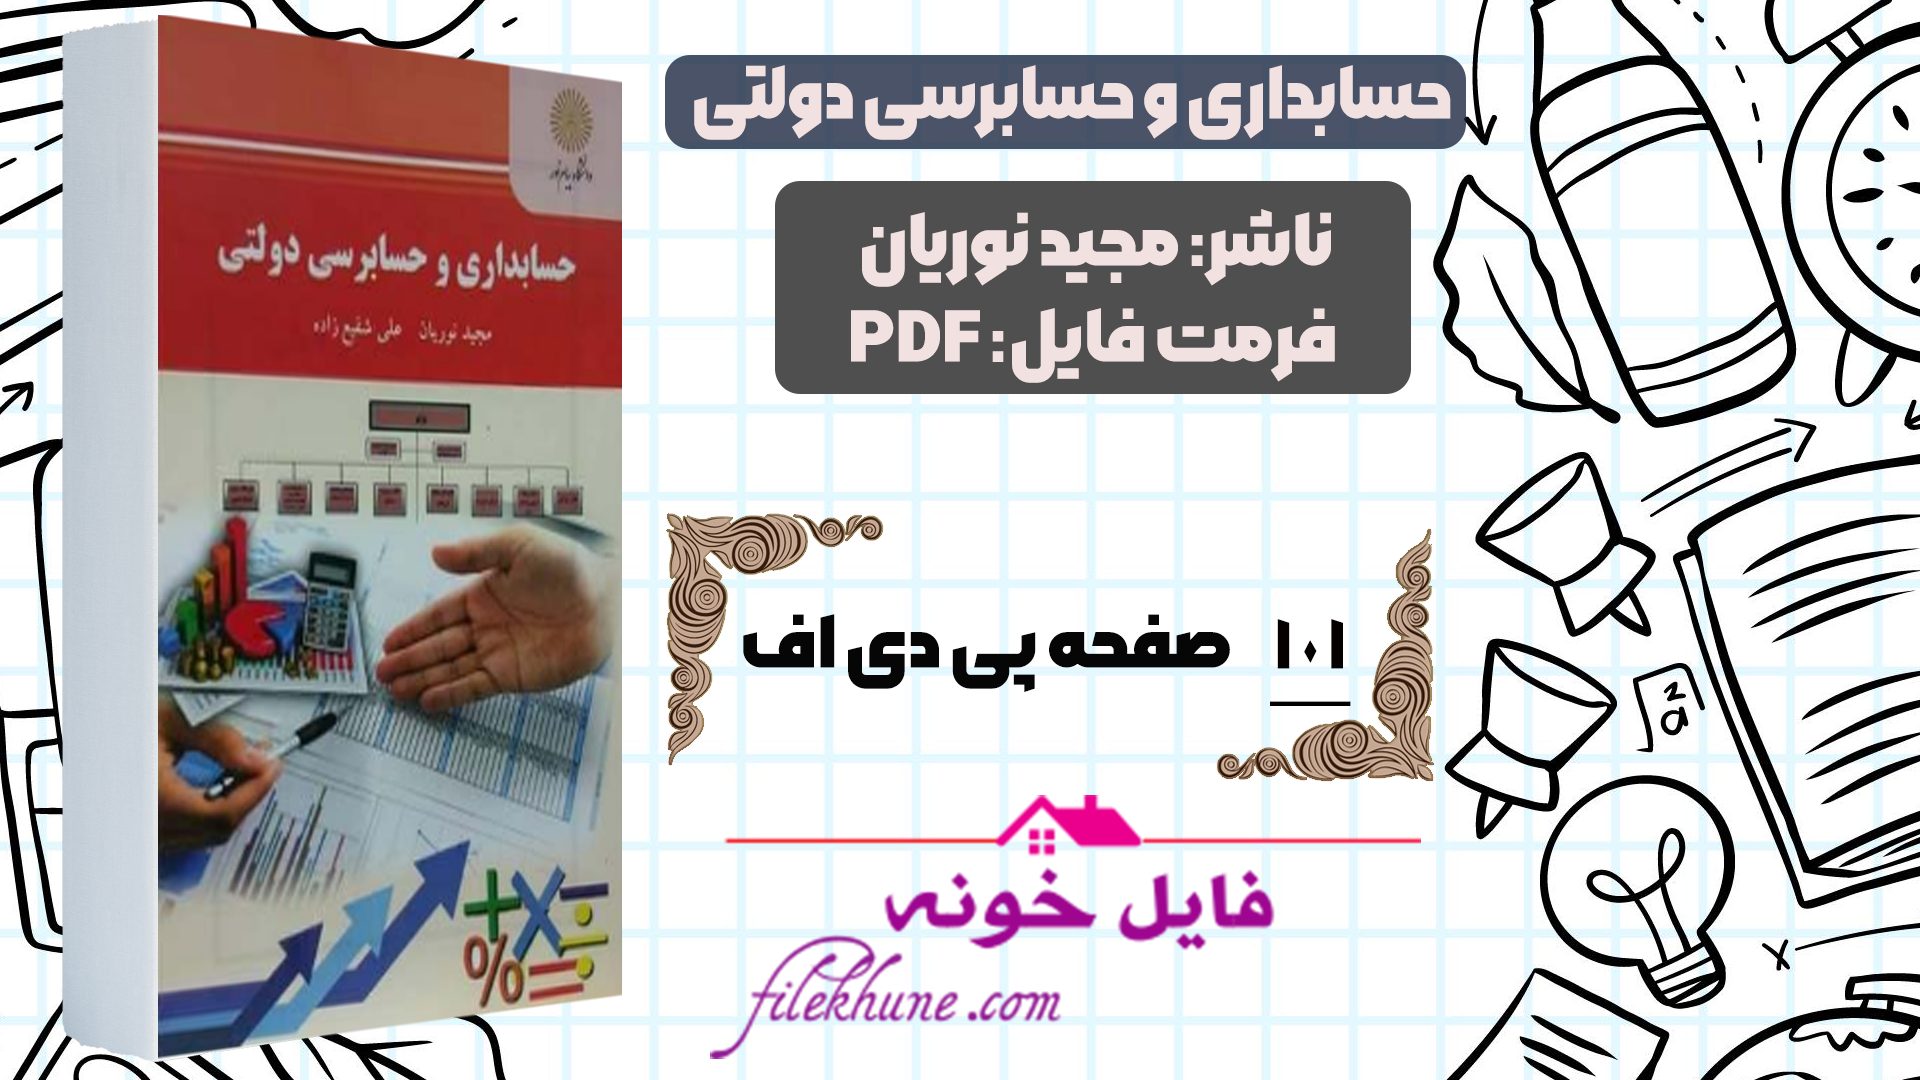 دانلود کتاب حسابداری و حسابرسی دولتی مجید نوریان PDF